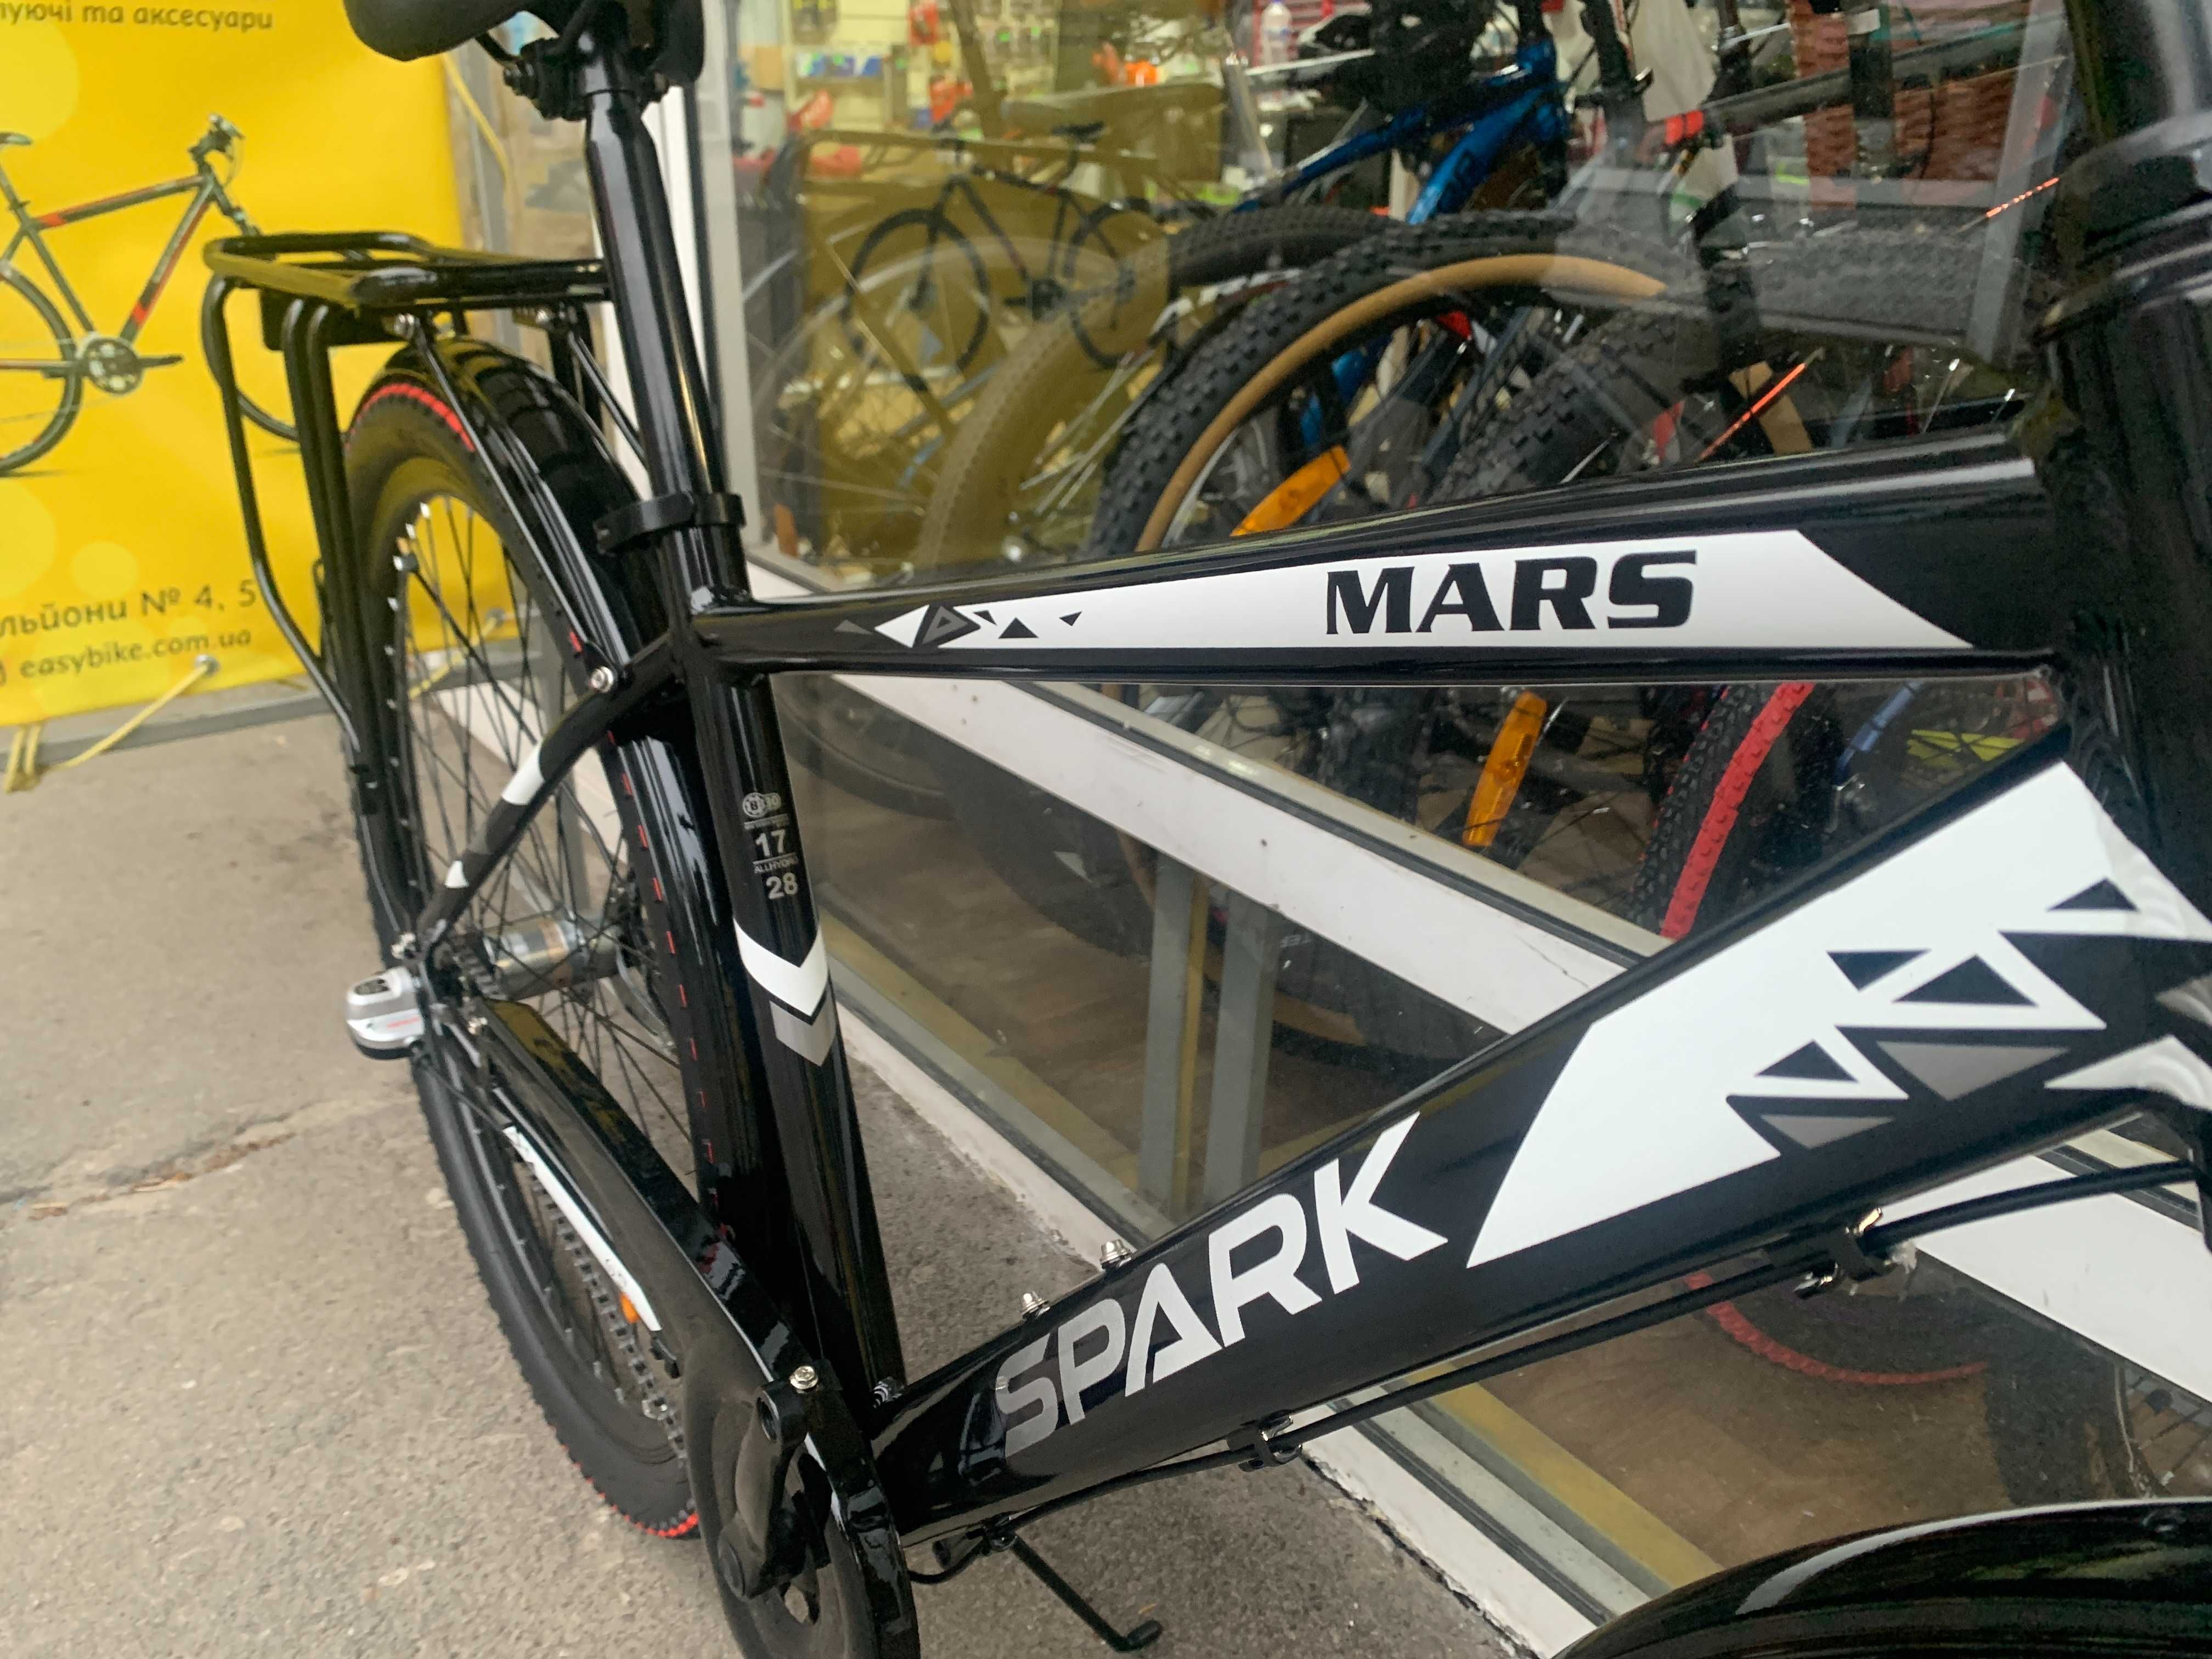 Стильний міцний велосипед Spark Mars 28 колеса 17 рама